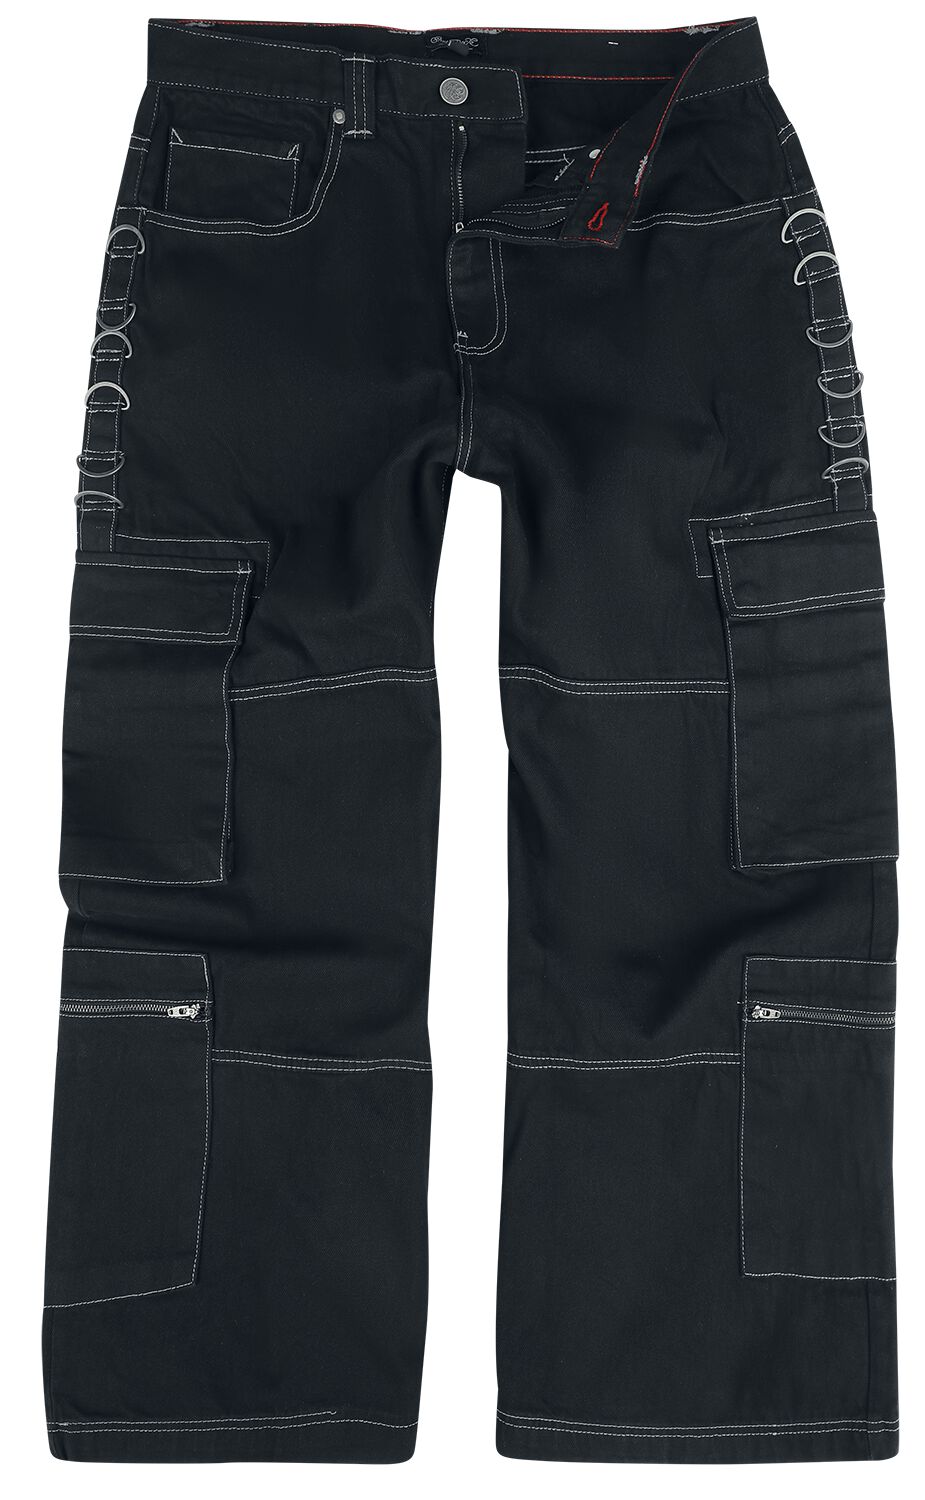 Chet Rock Jeans - Monaghan Utility Jeans - W30L32 bis W38L34 - für Männer - Größe W32L34 - schwarz von Chet Rock